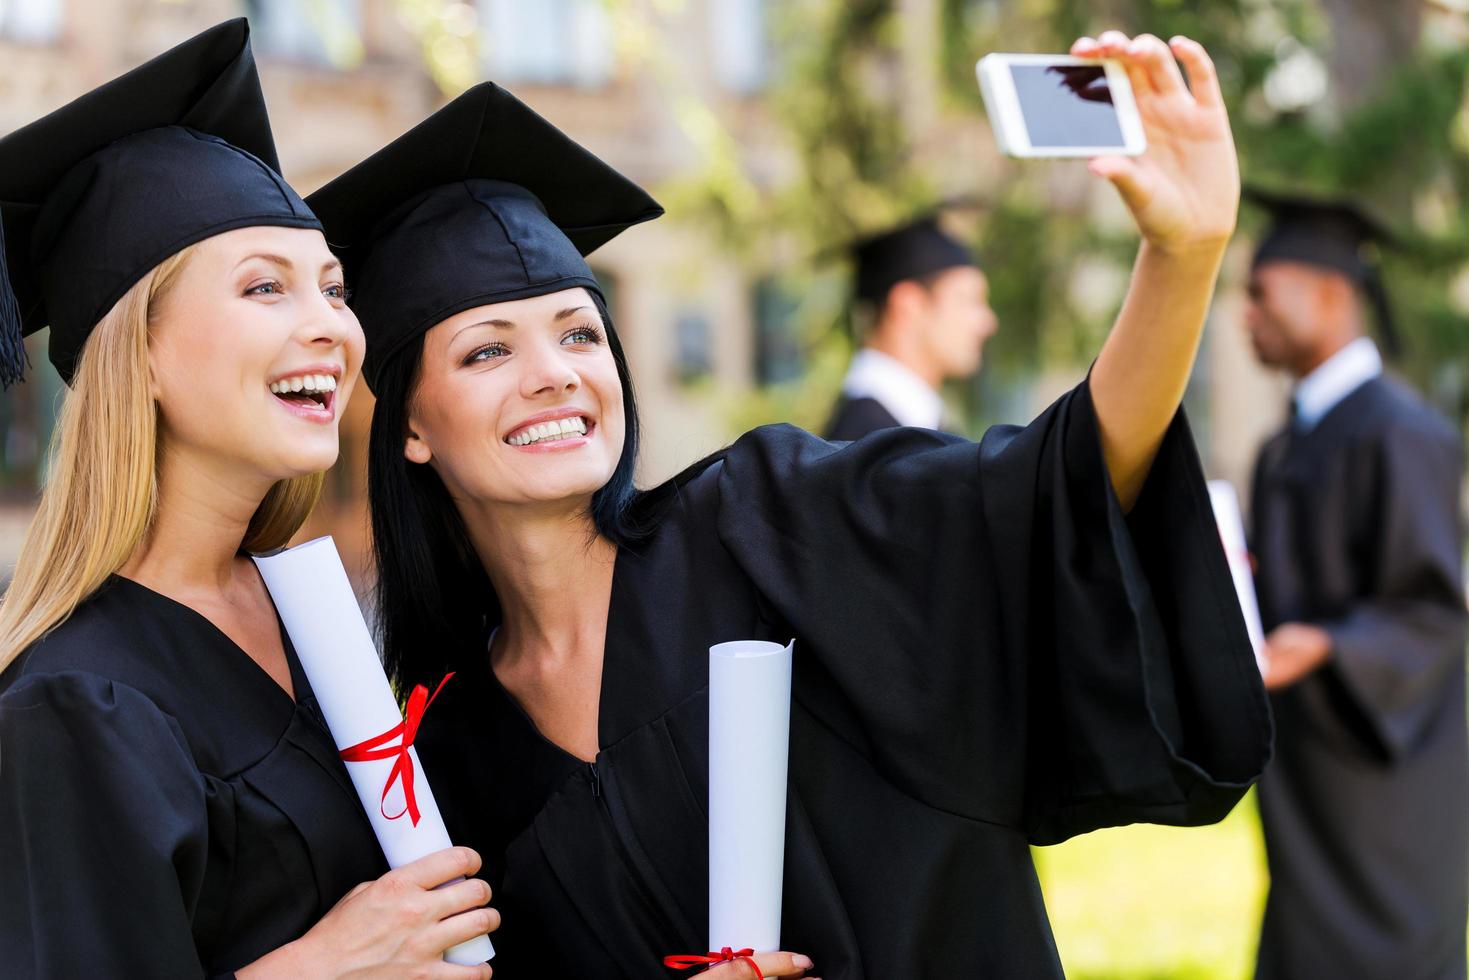 vastleggen gelukkig momenten. twee gelukkig Dames in diploma uitreiking jurken maken selfie en glimlachen terwijl twee mannen staand in de achtergrond foto